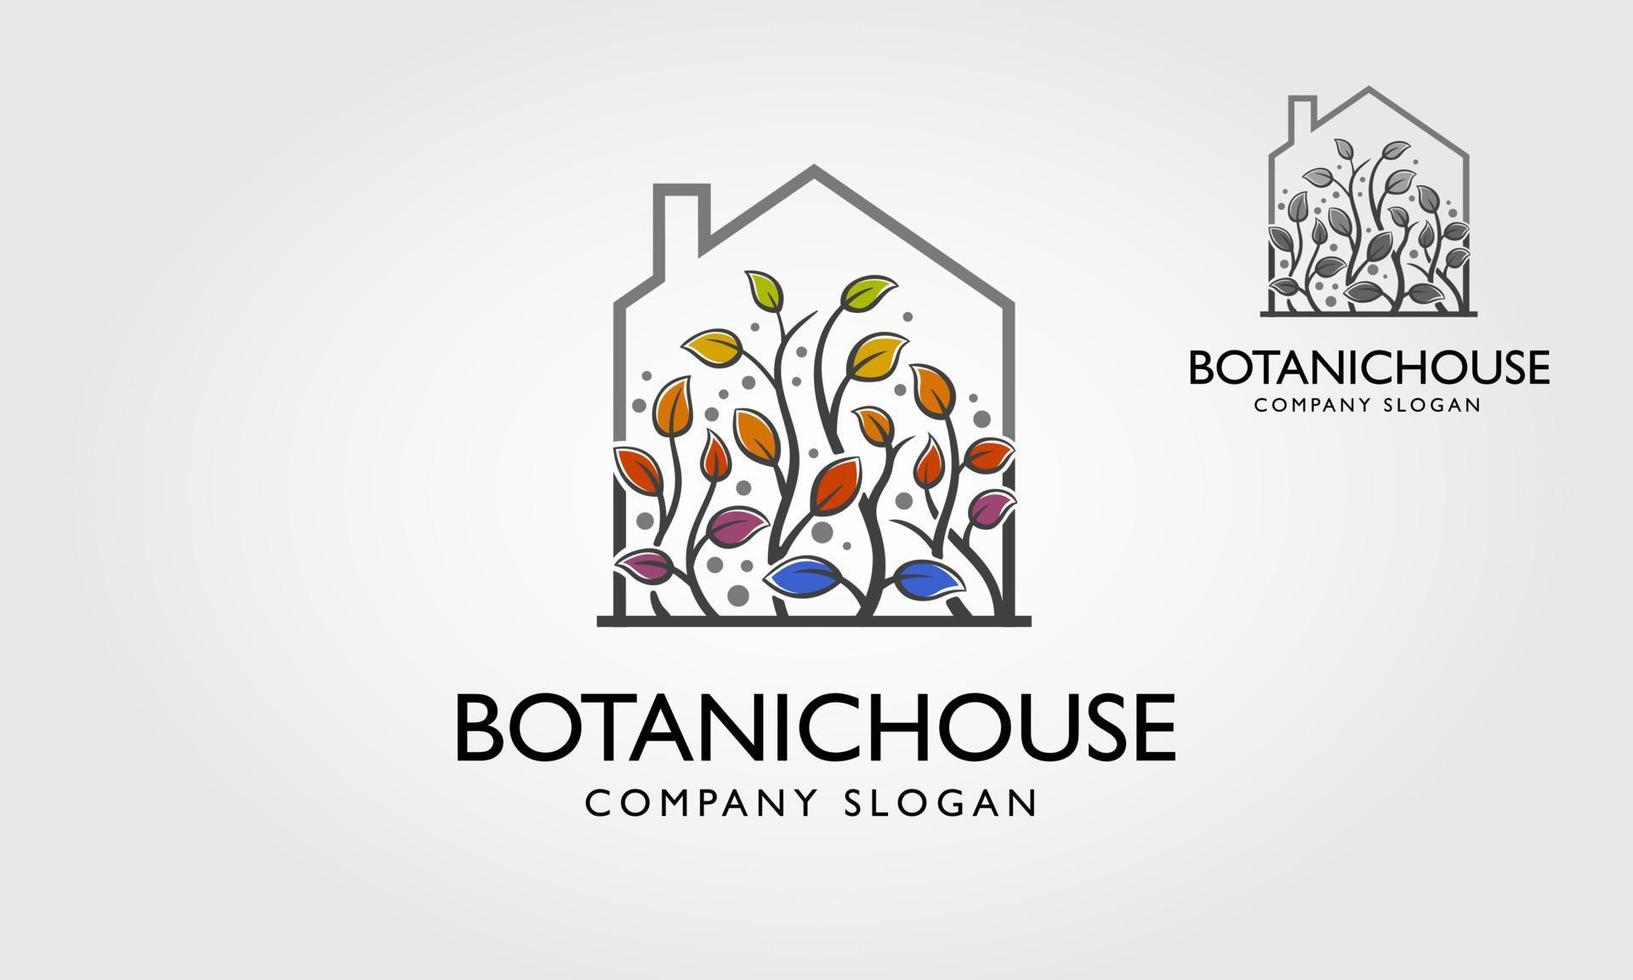 botanische huis vector logo sjabloon. het belangrijkste symbool van het logo is een tuin, geïntegreerd in het huis. dit logo symboliseert een buurt-, lente-, groei-, natuur-, ecologisch en milieuconcept